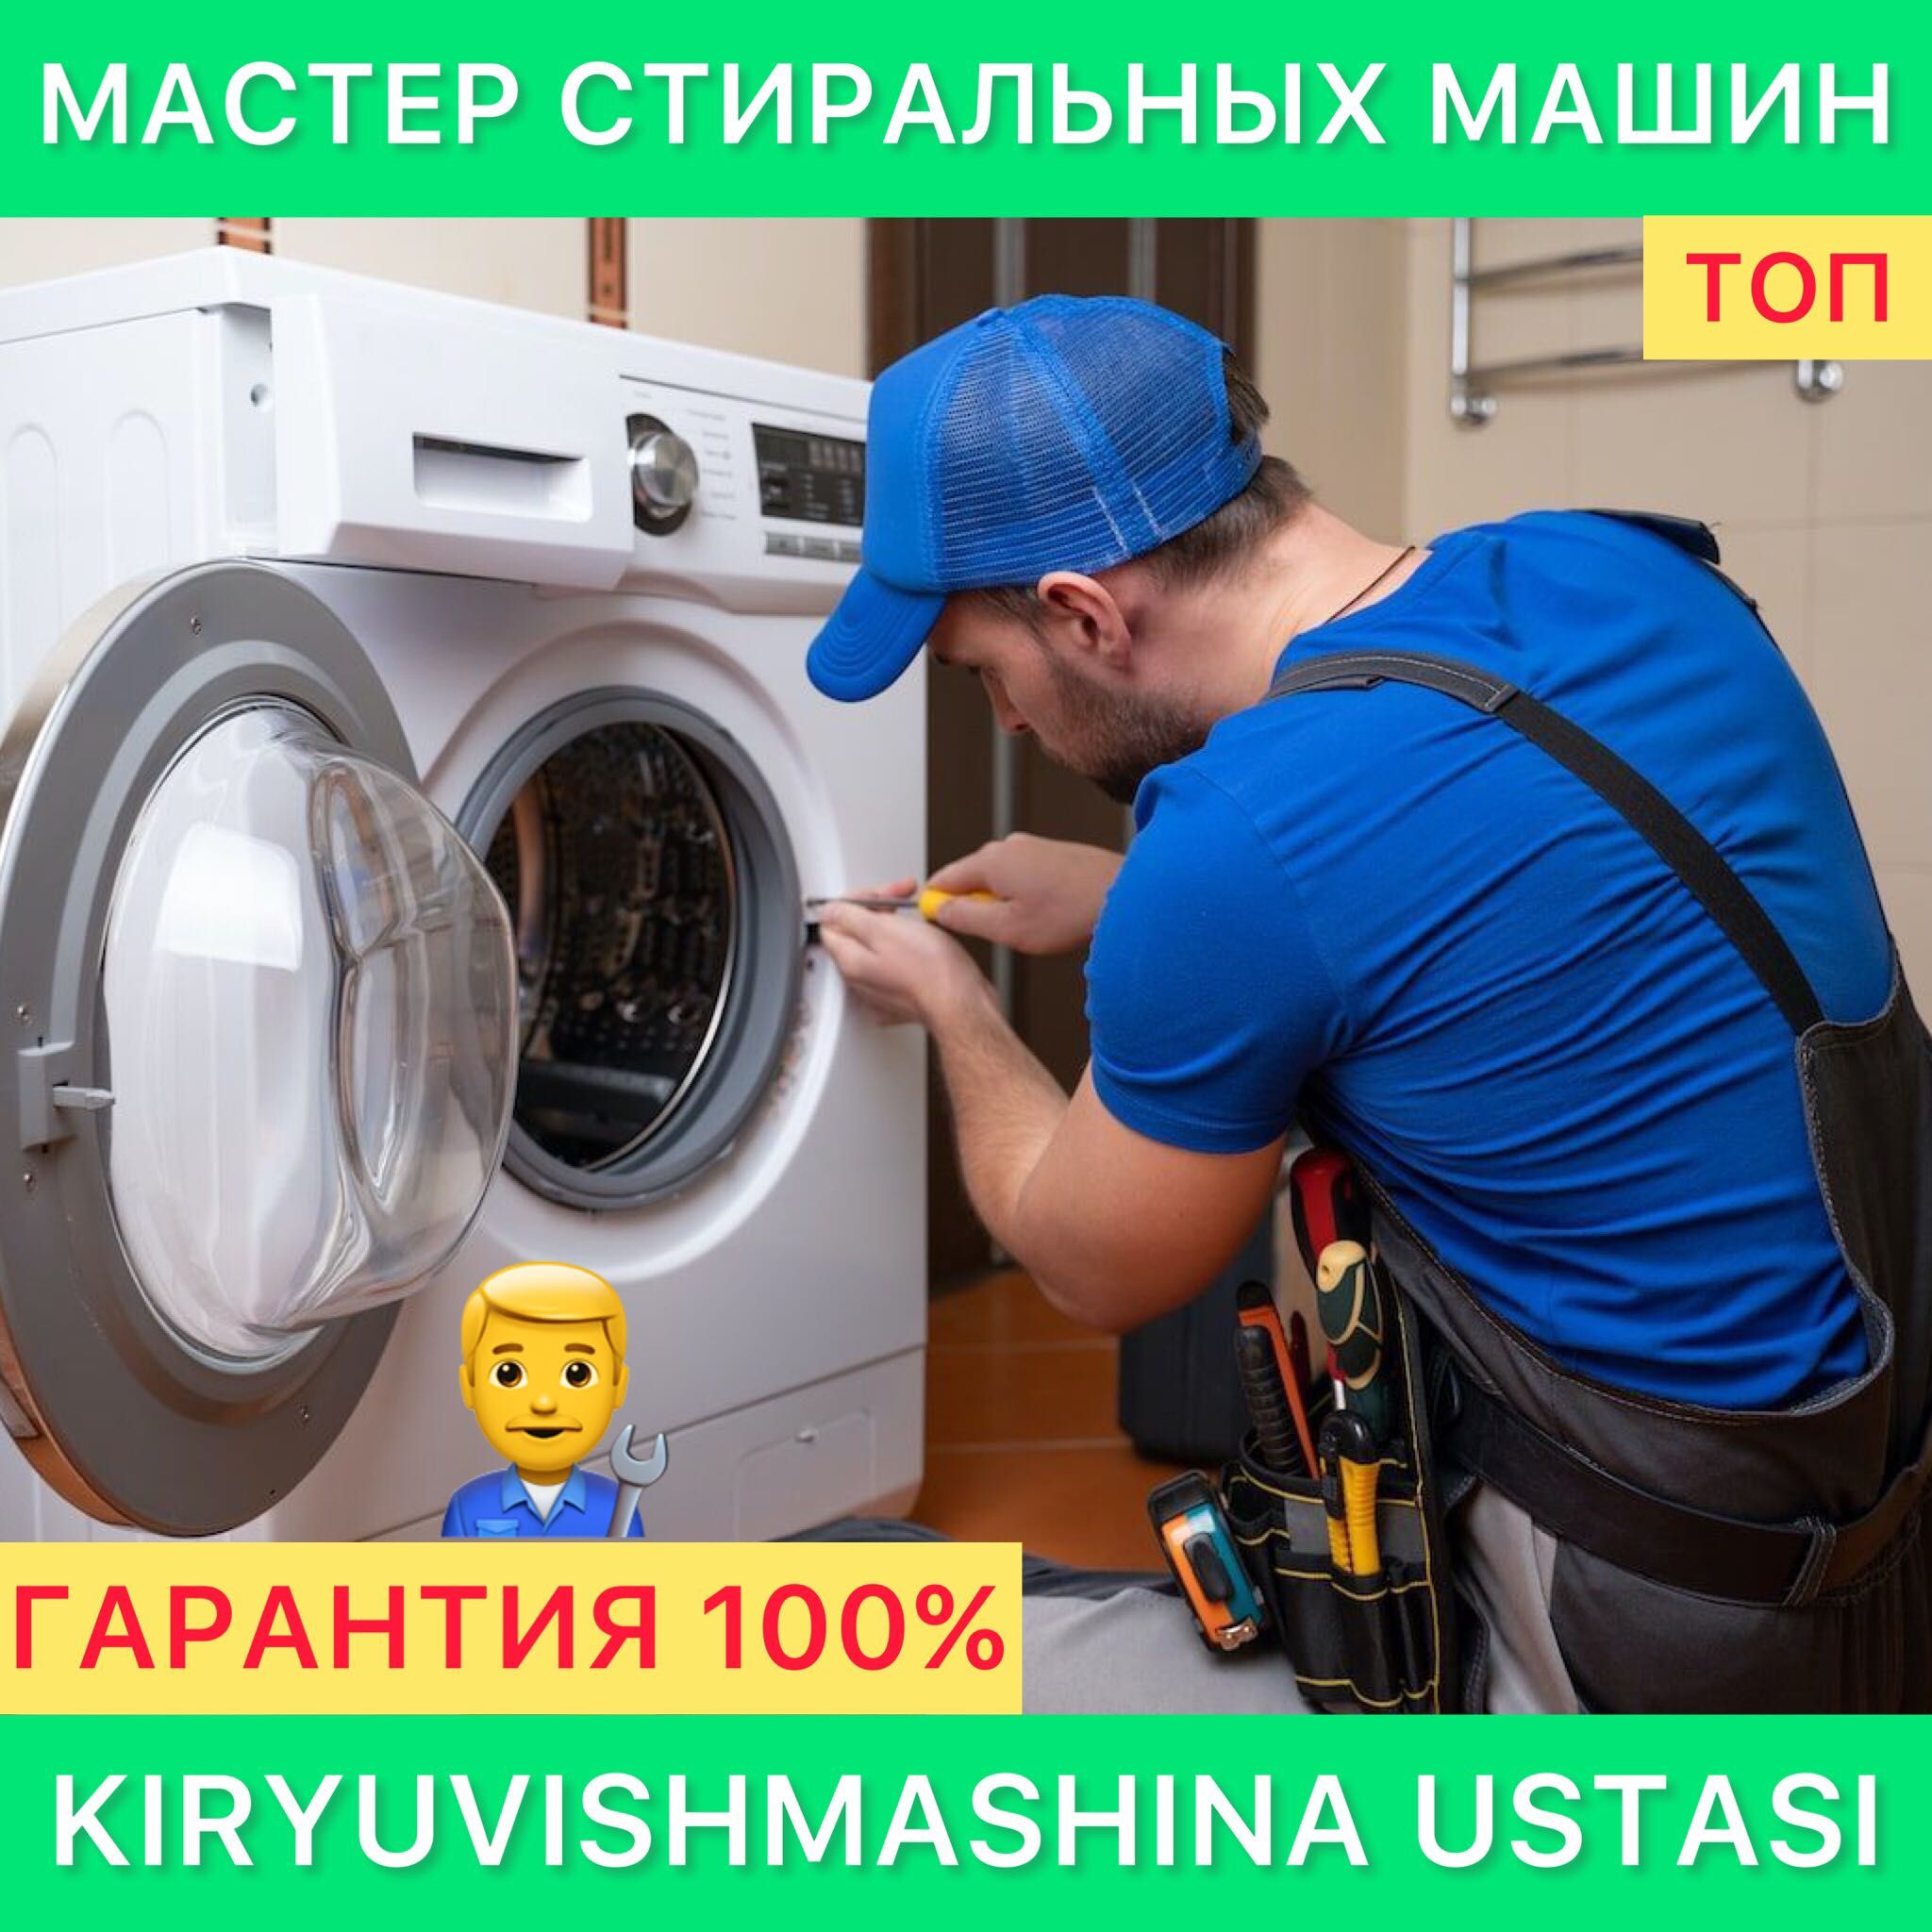 Ремонт стиральных машин Indesit Kir moshina ustasi